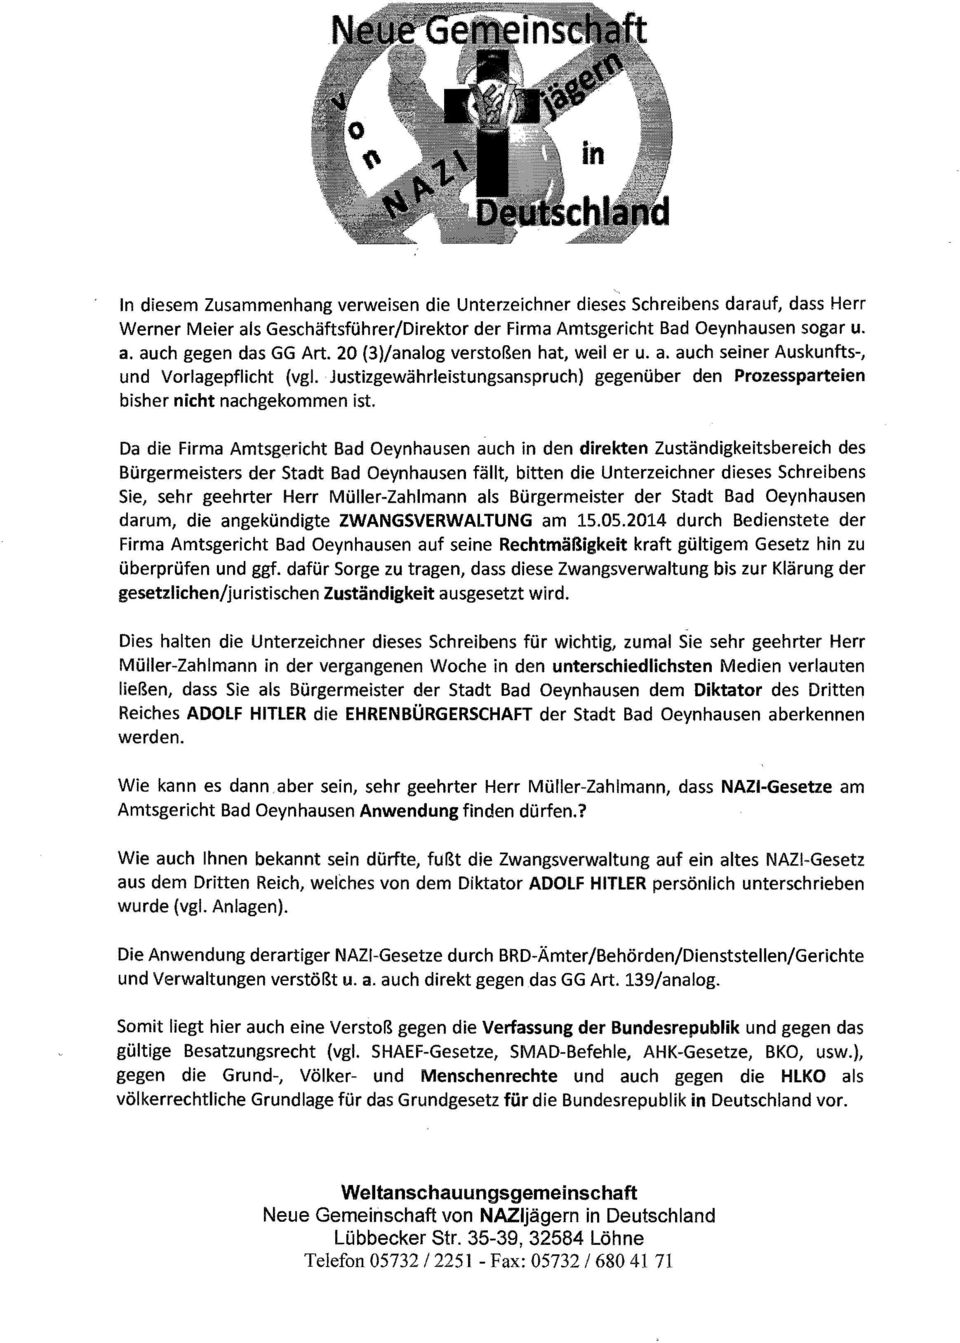 Da die Firma Amtsgericht Bad Oeynhausen auch in den direkten Zuständigkeitsbereich des Bürgermeisters der Stadt Bad Oeynhausen fällt, bitten die Unterzeichner dieses Schreibens Sie, sehr geehrter